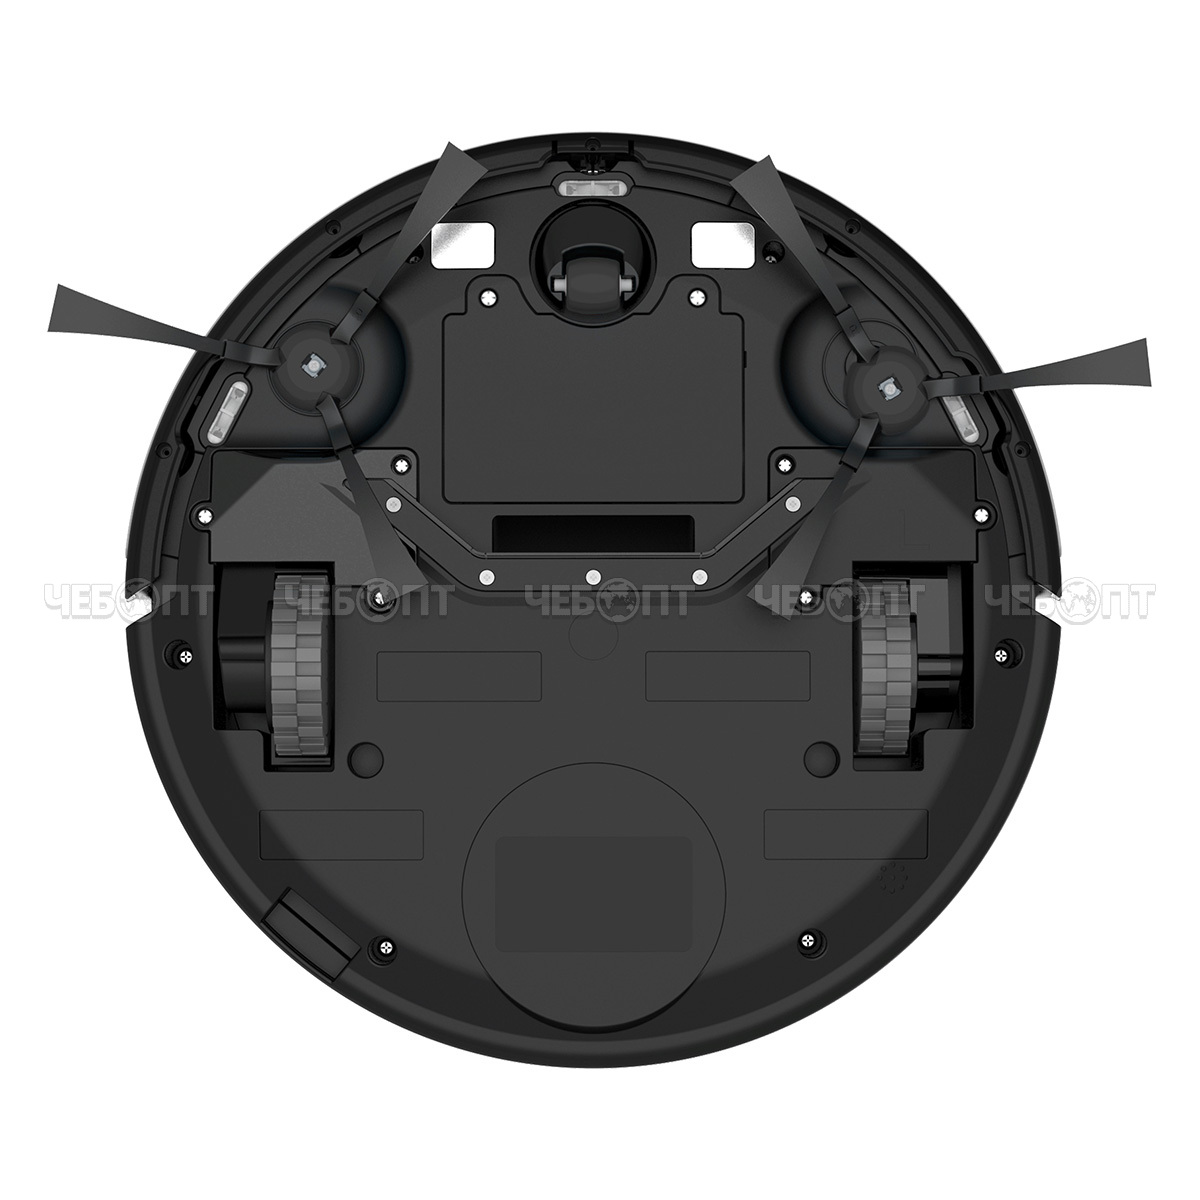 Робот-пылесос CENTEK CT-2701 объем пылесборника 0,22, высота препятствий до 12 мм зарядное устройство, пульт ДУ  [4]. ЧЕБОПТ.